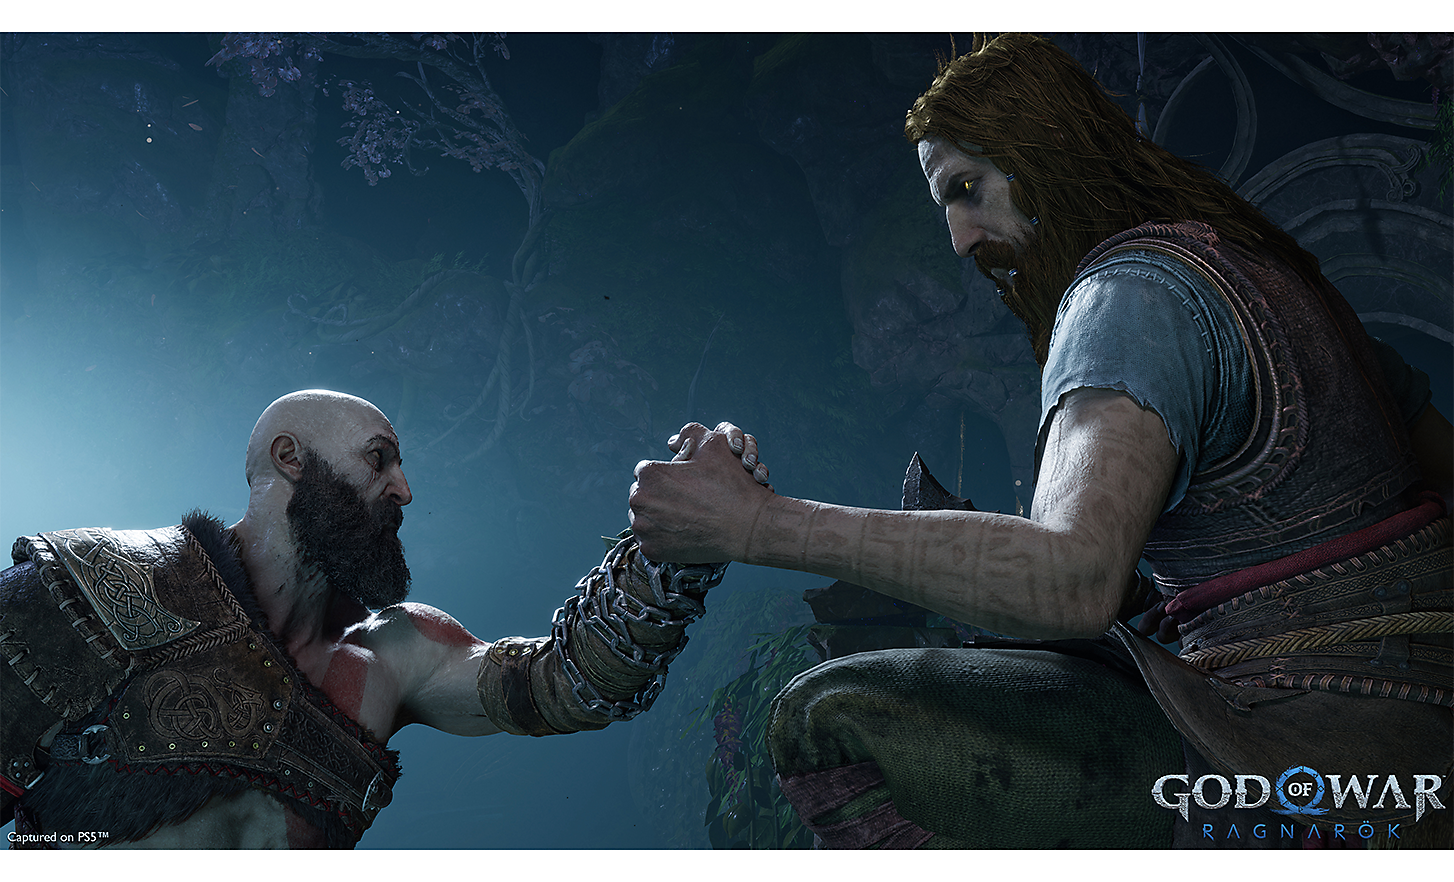 Escena de God of War: Ragnarök en la que se muestra un apretón de manos entre dos guerreros